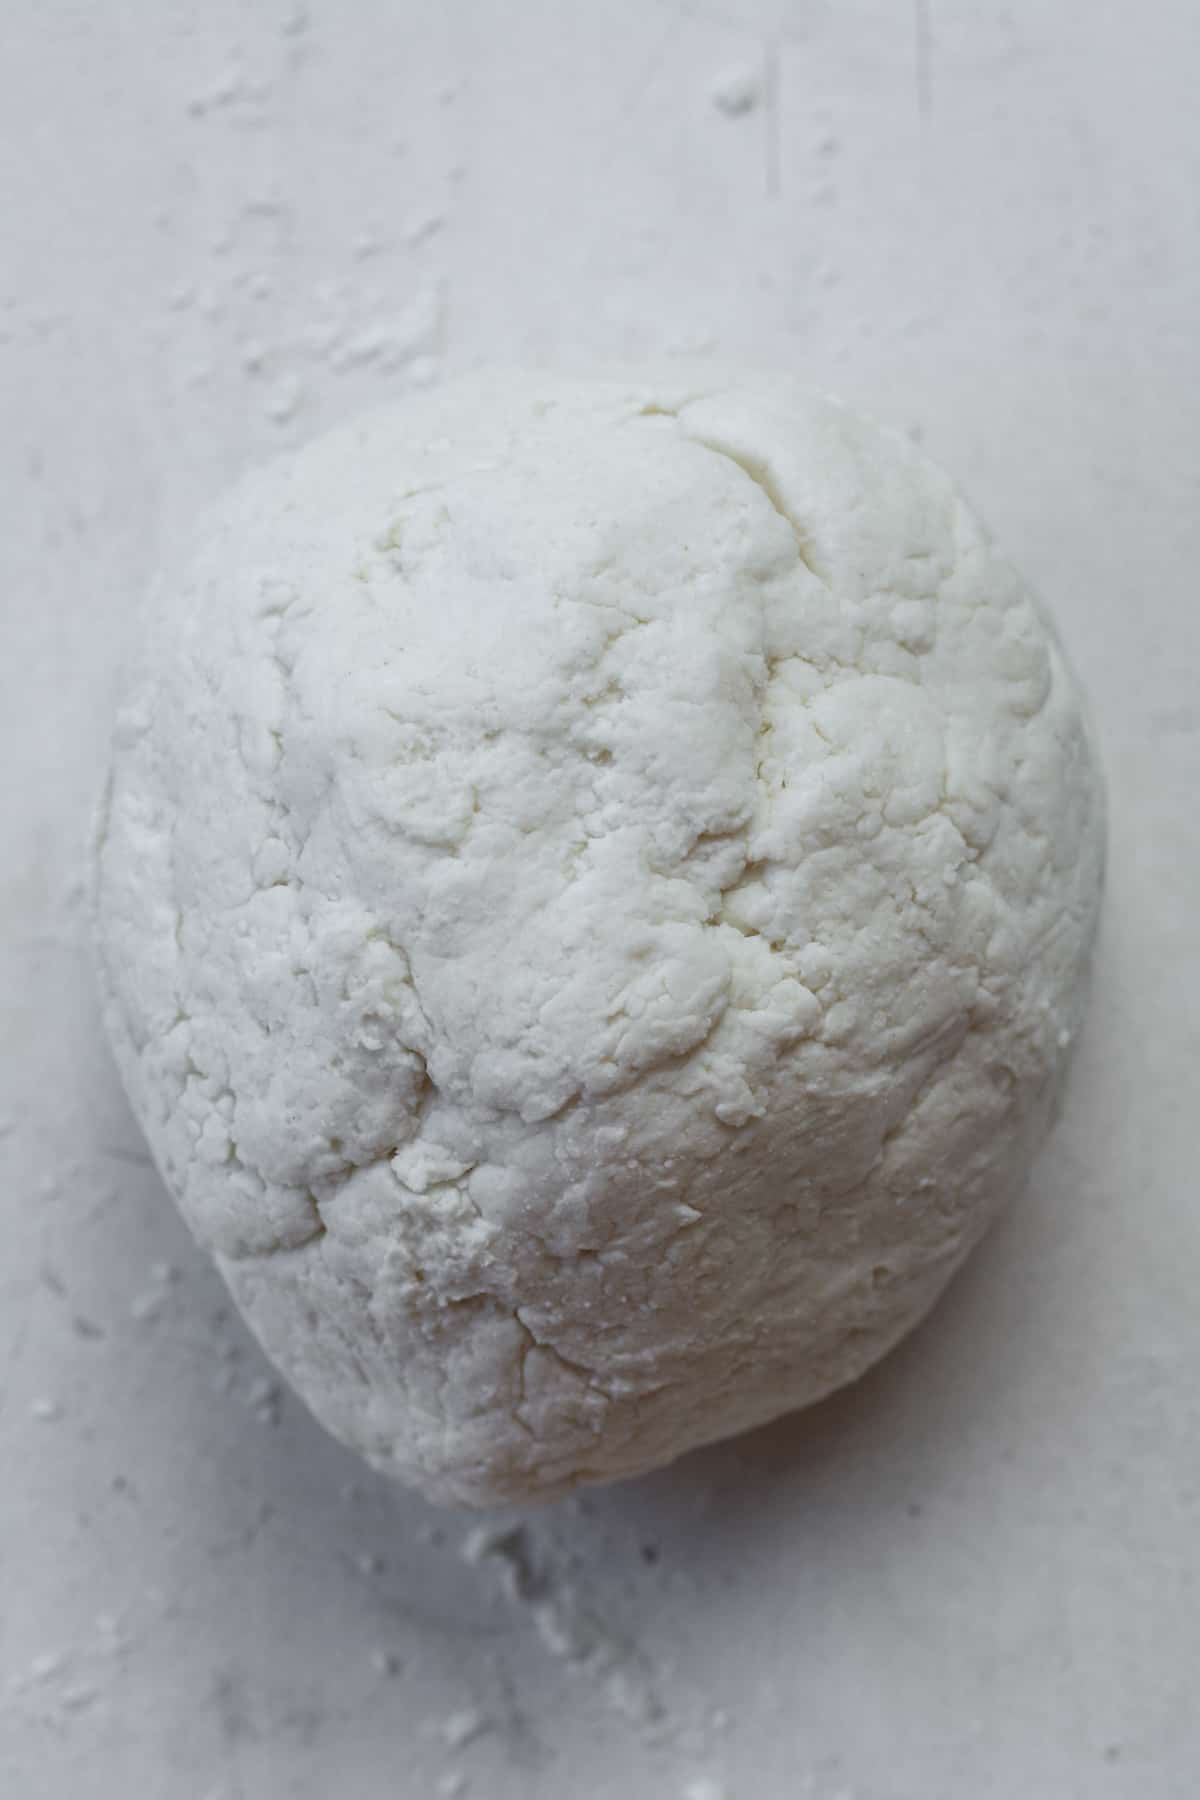 Ball of dough.